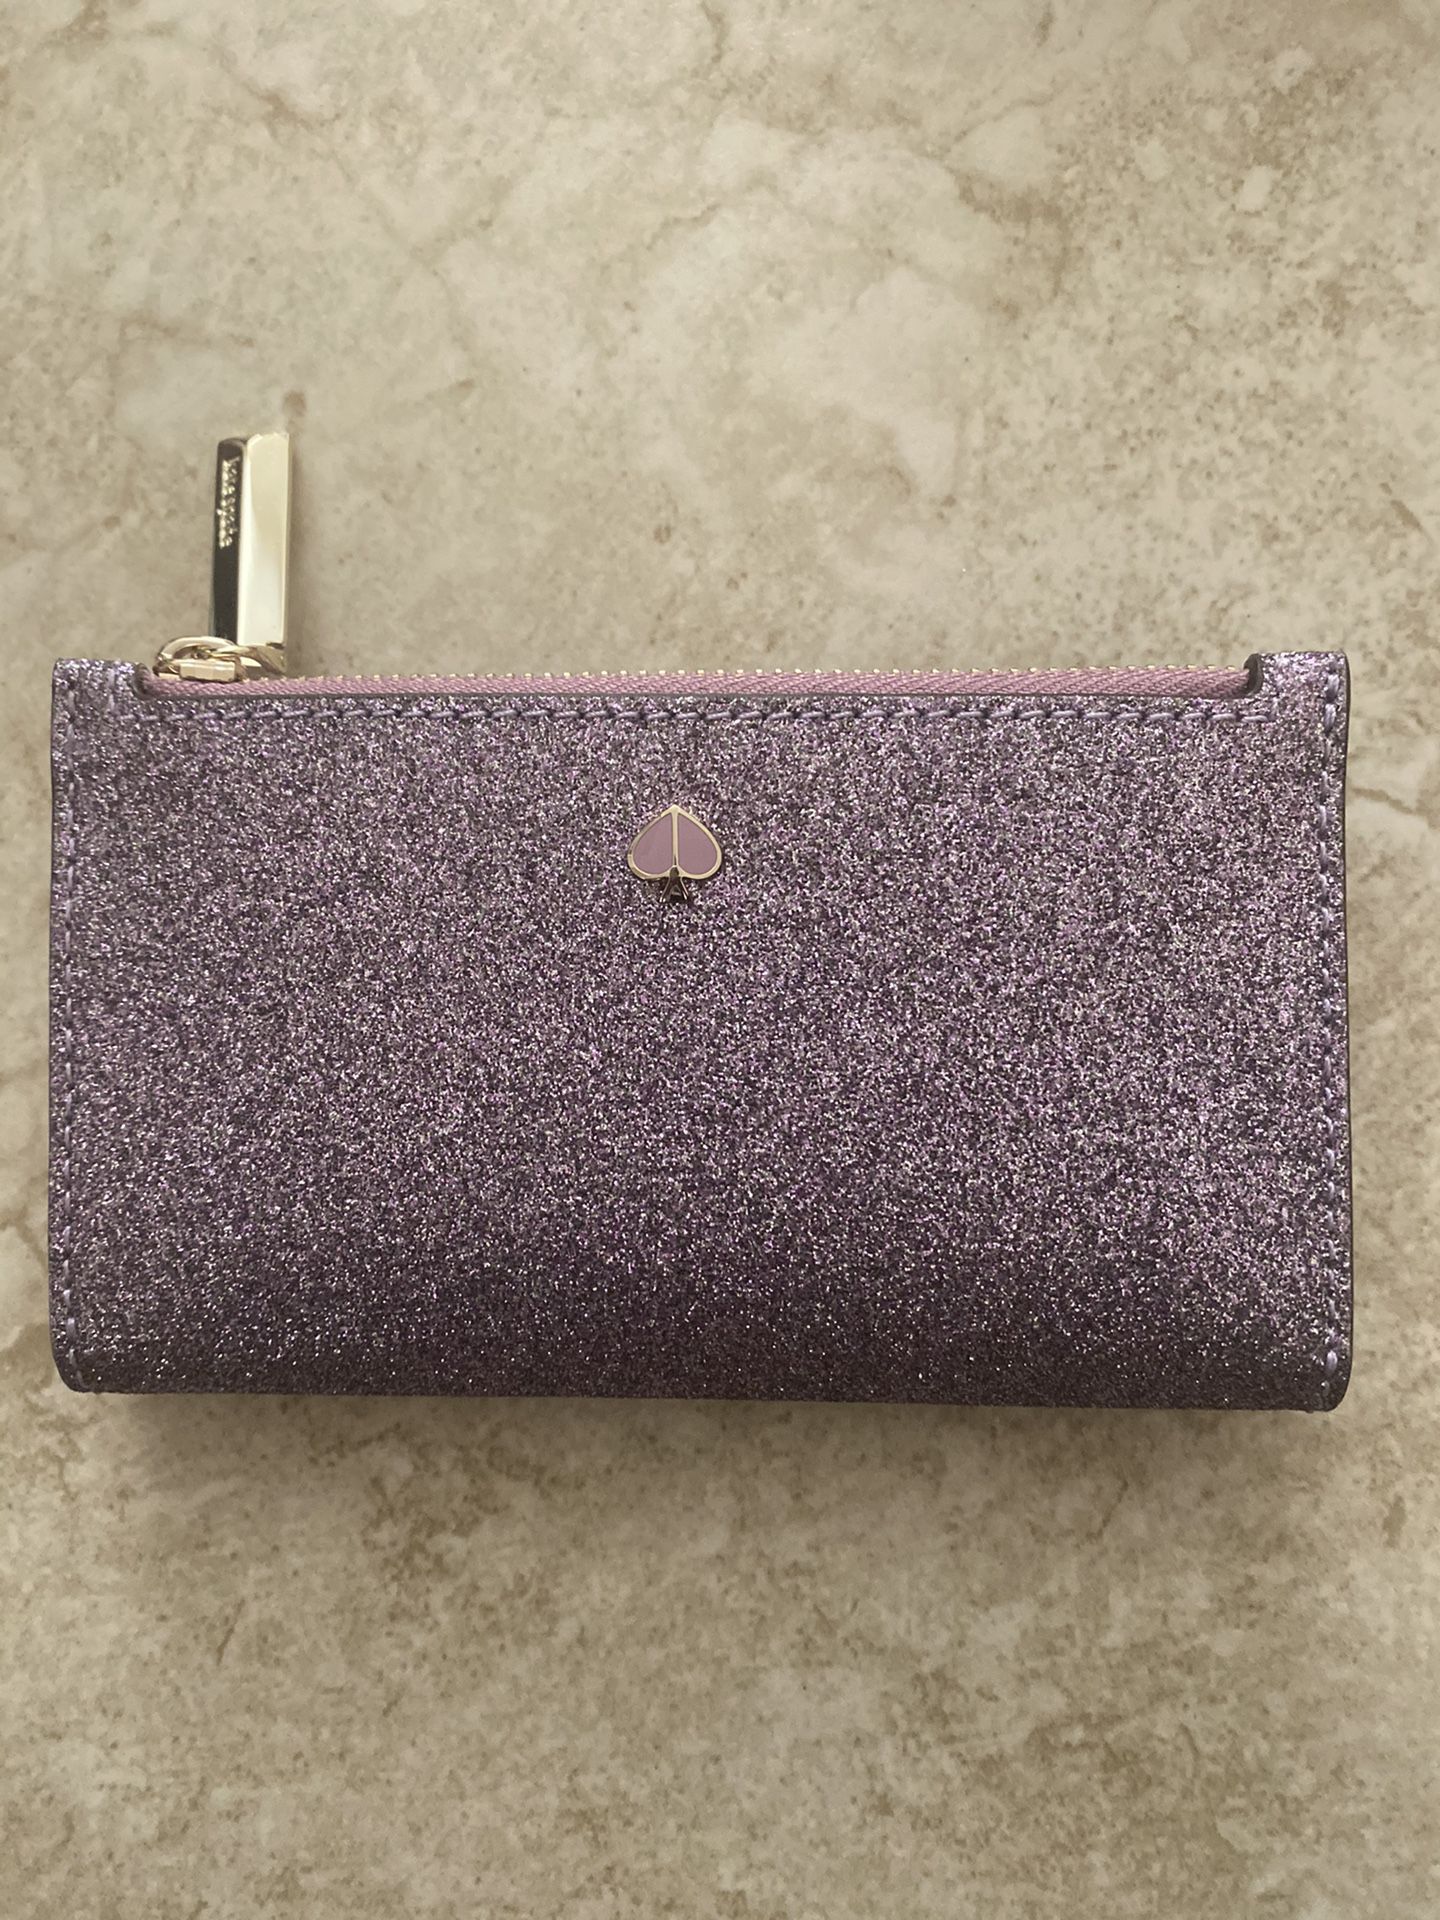 Kate Spade Purple wallet